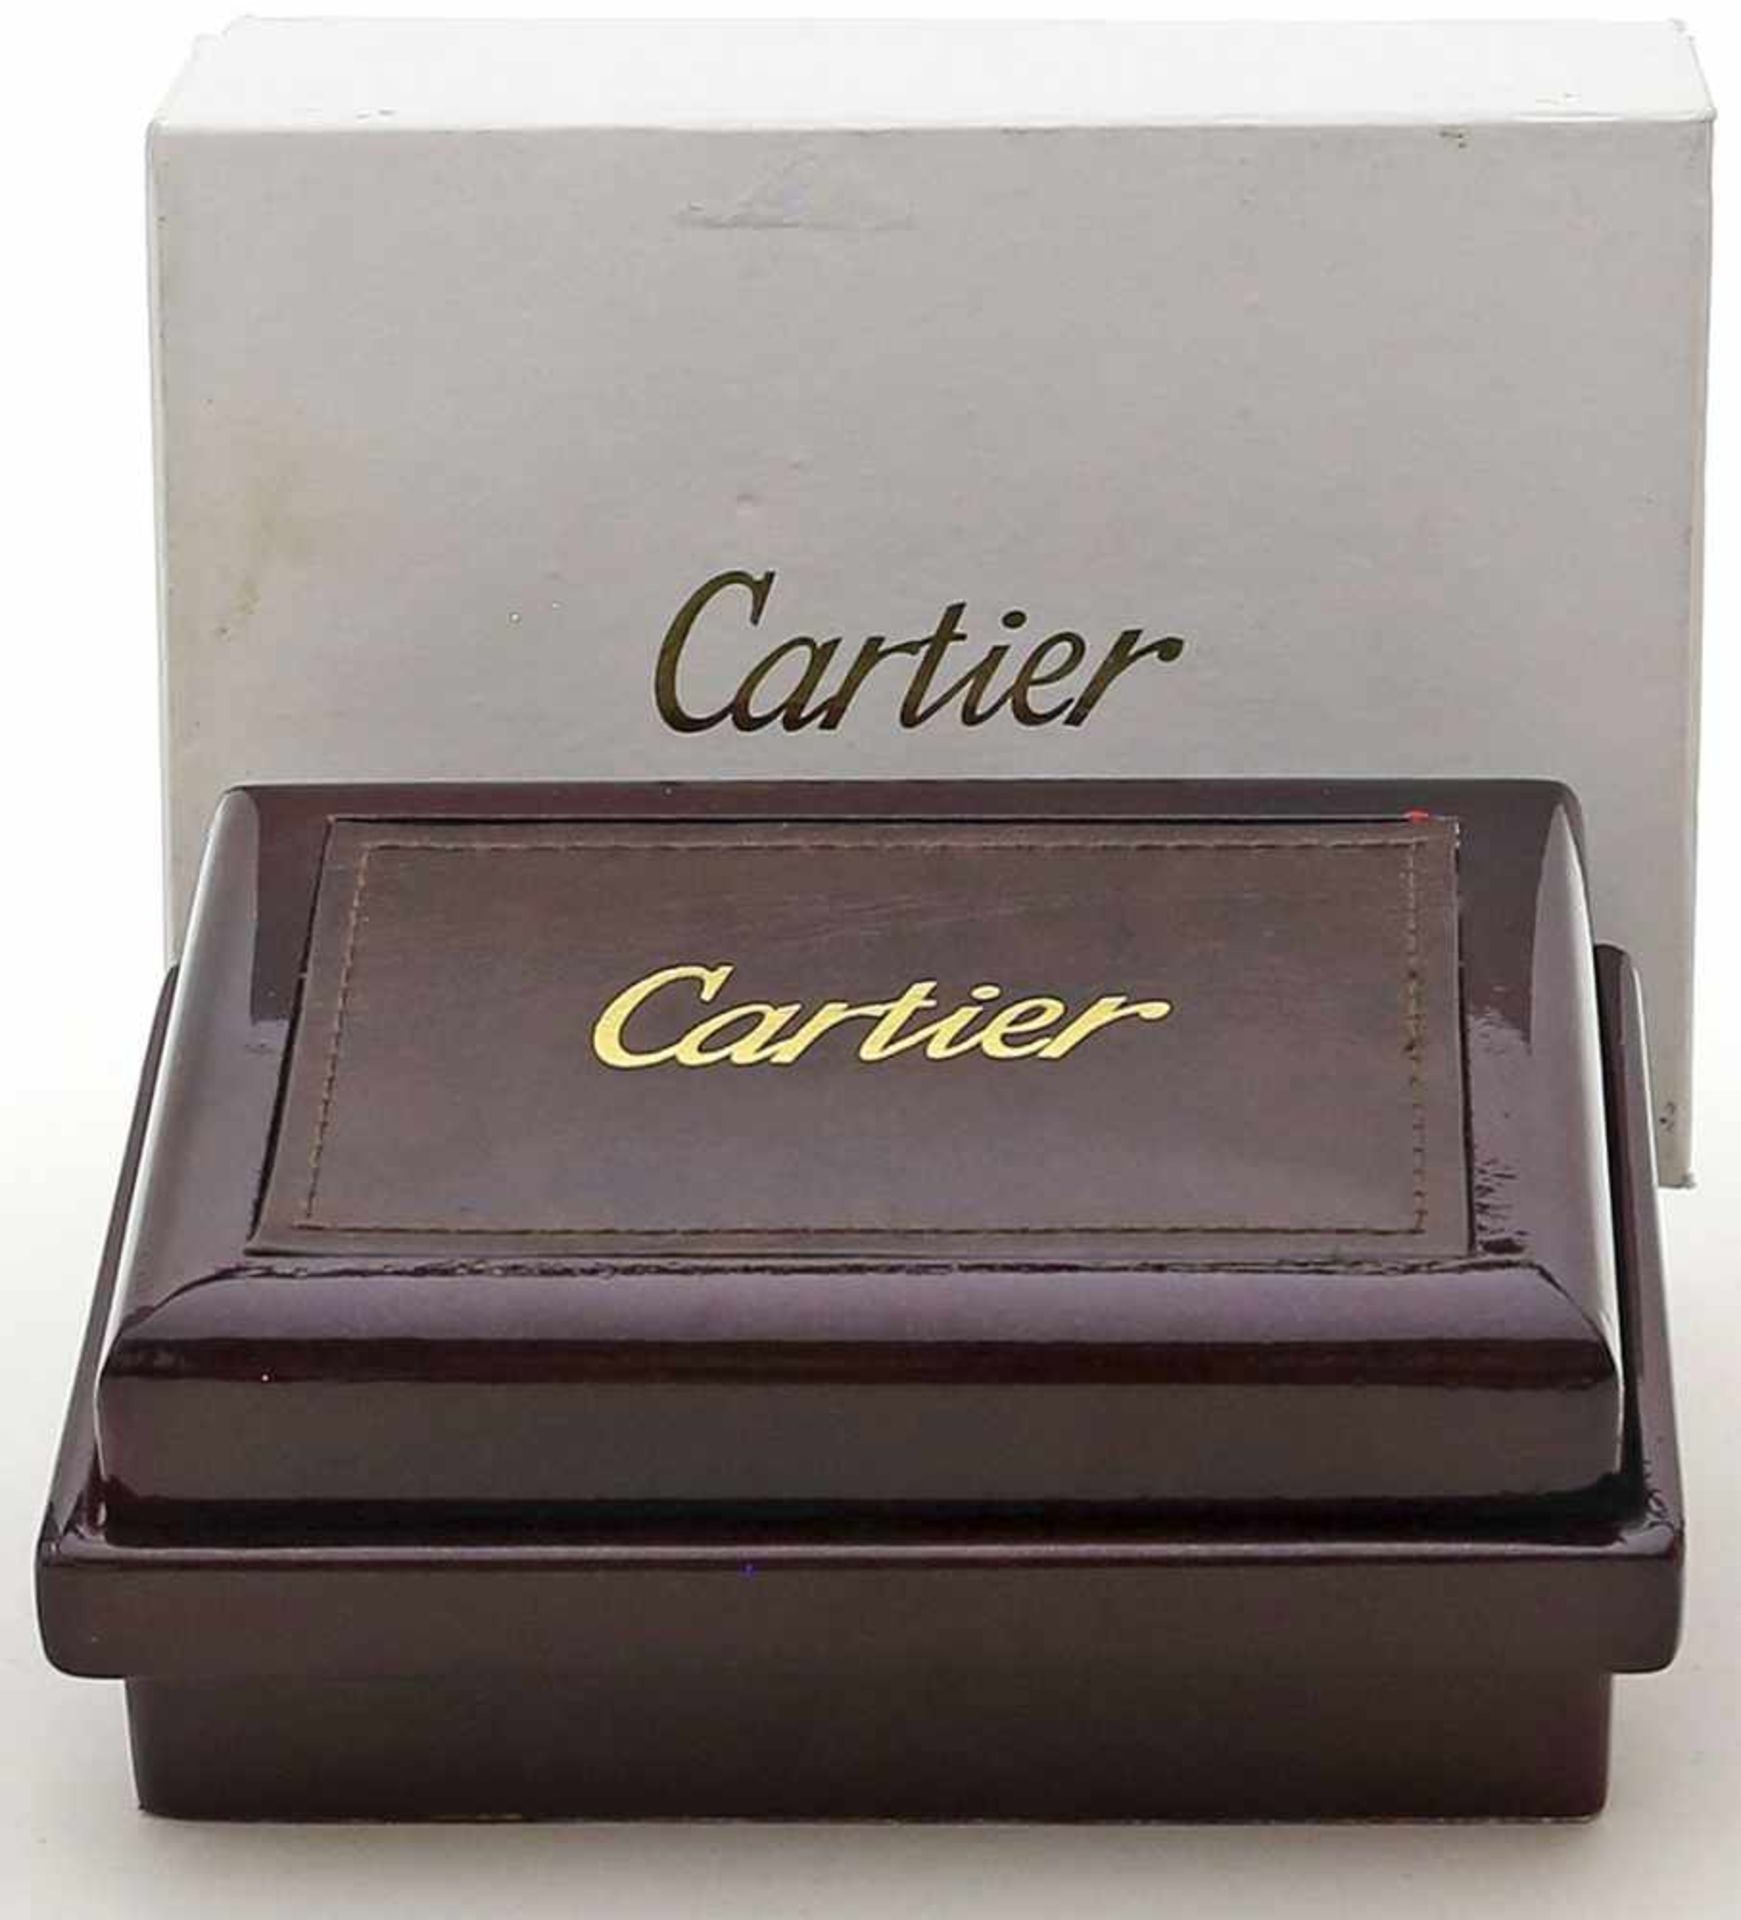 Armbanduhrenschatulle "Cartier".L. Gebrauchsspuren. Mit Umkarton.